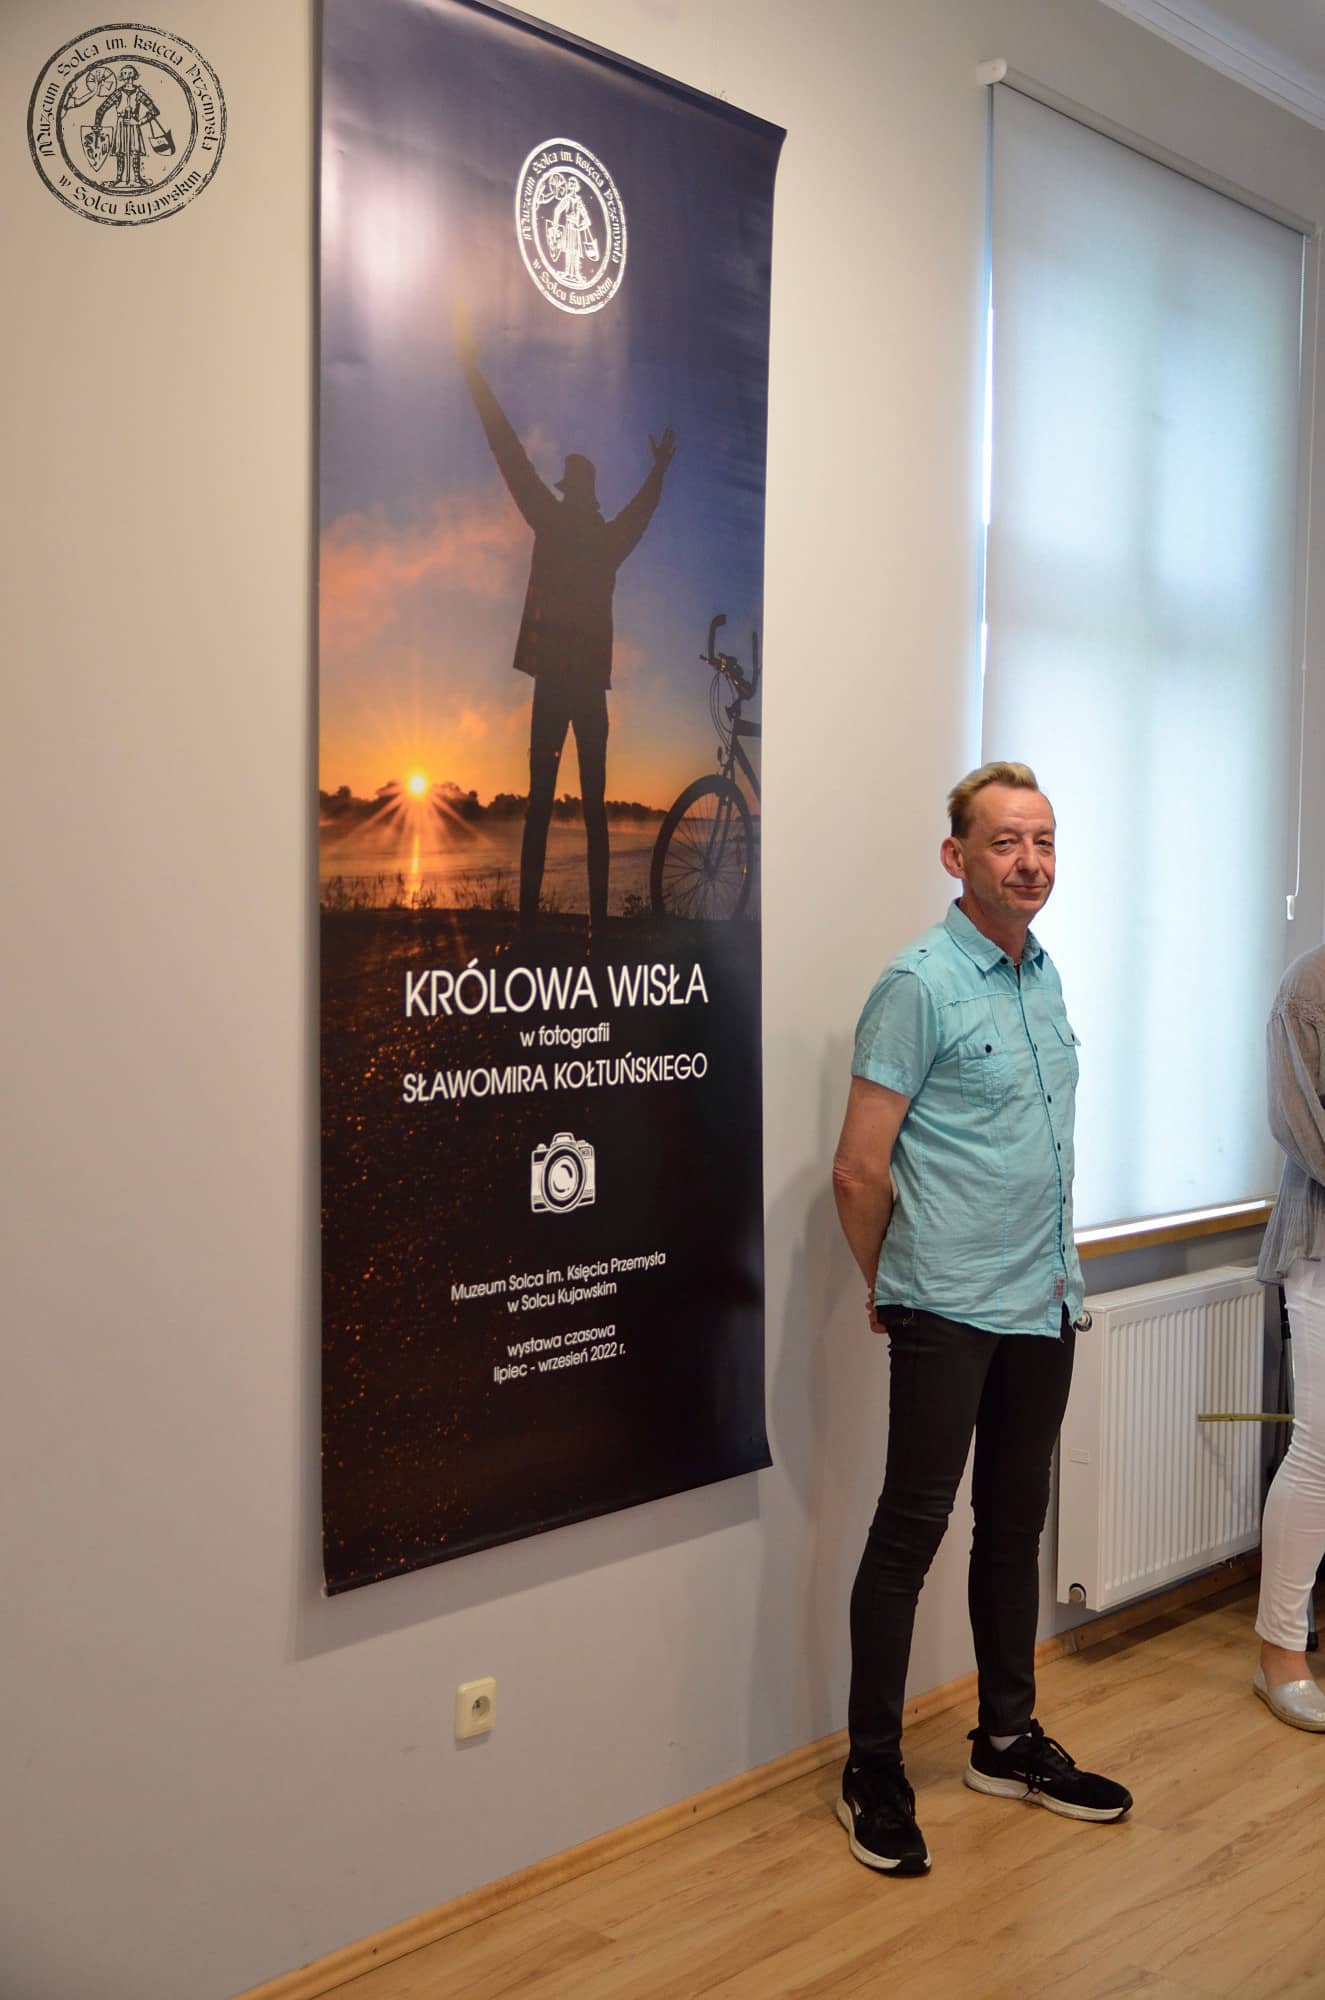 Sławomir Kołtuński przy planszy tytułowej wystawy "Królowa Wisła w fotografii Sławomira Kołtuńskiego".